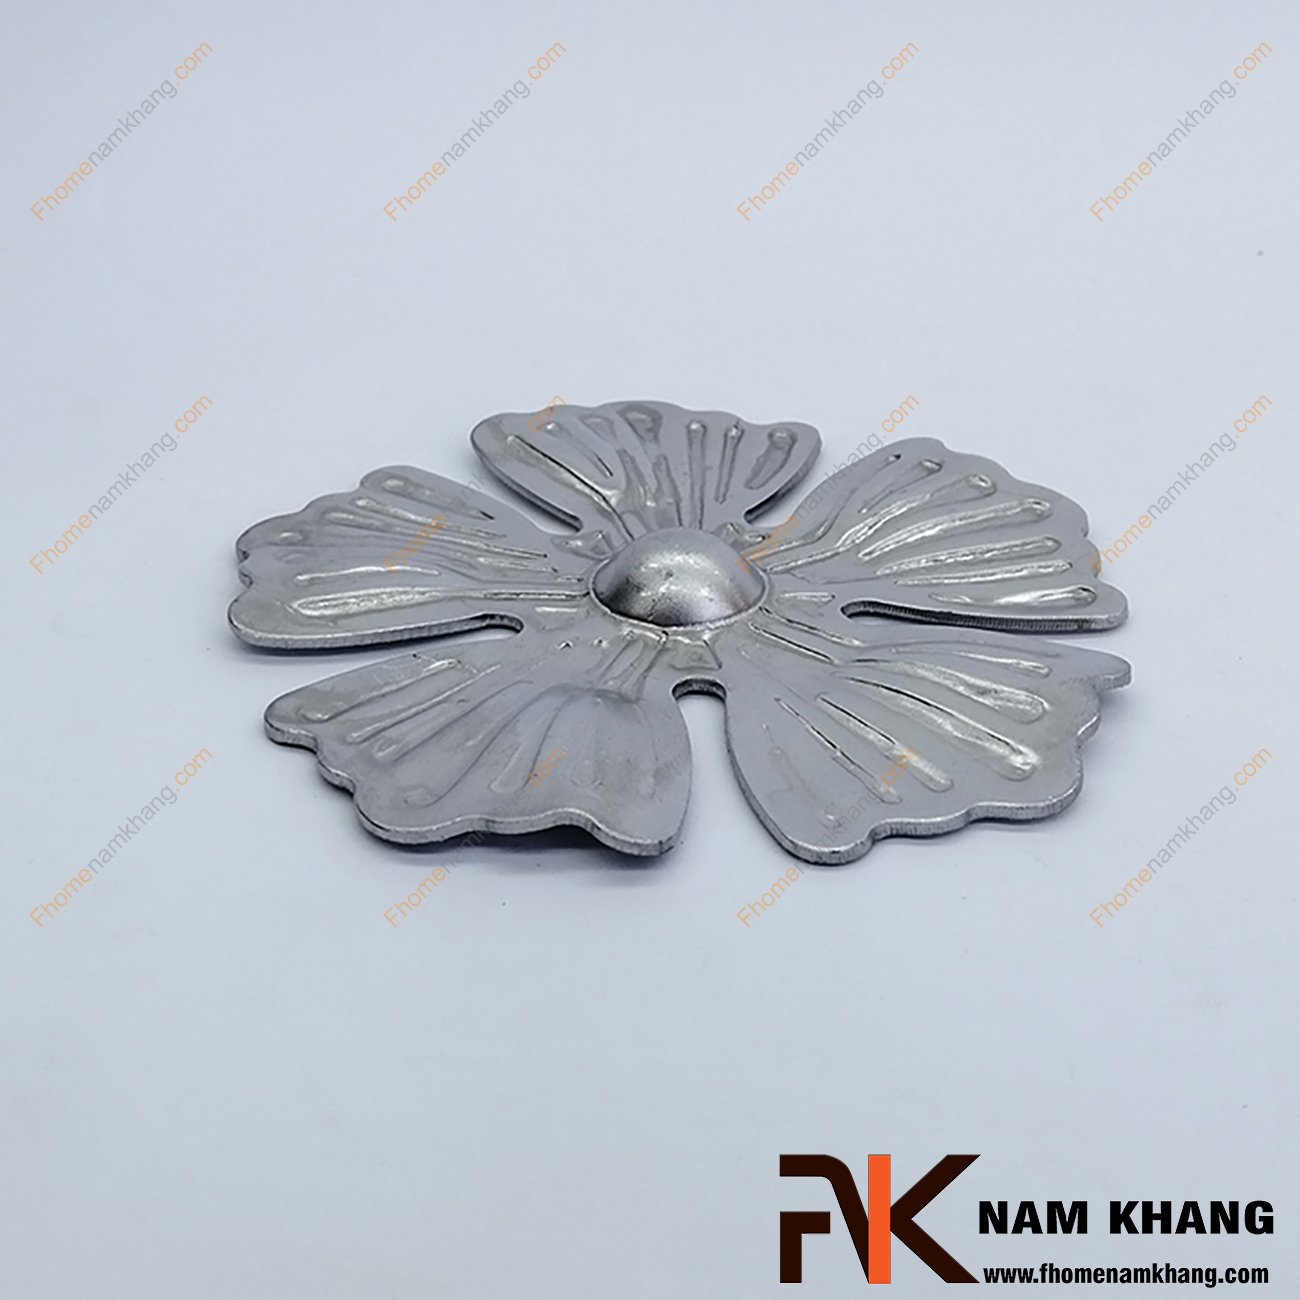 Hoa thép dập hình bông hoa 5 cánh dù NKS-05 được sản xuất từ thép tấm có độ dày 1-2mm, có bề mặt láng mịn, hàn gắn dể dàng vào các chi tiết thép khác.